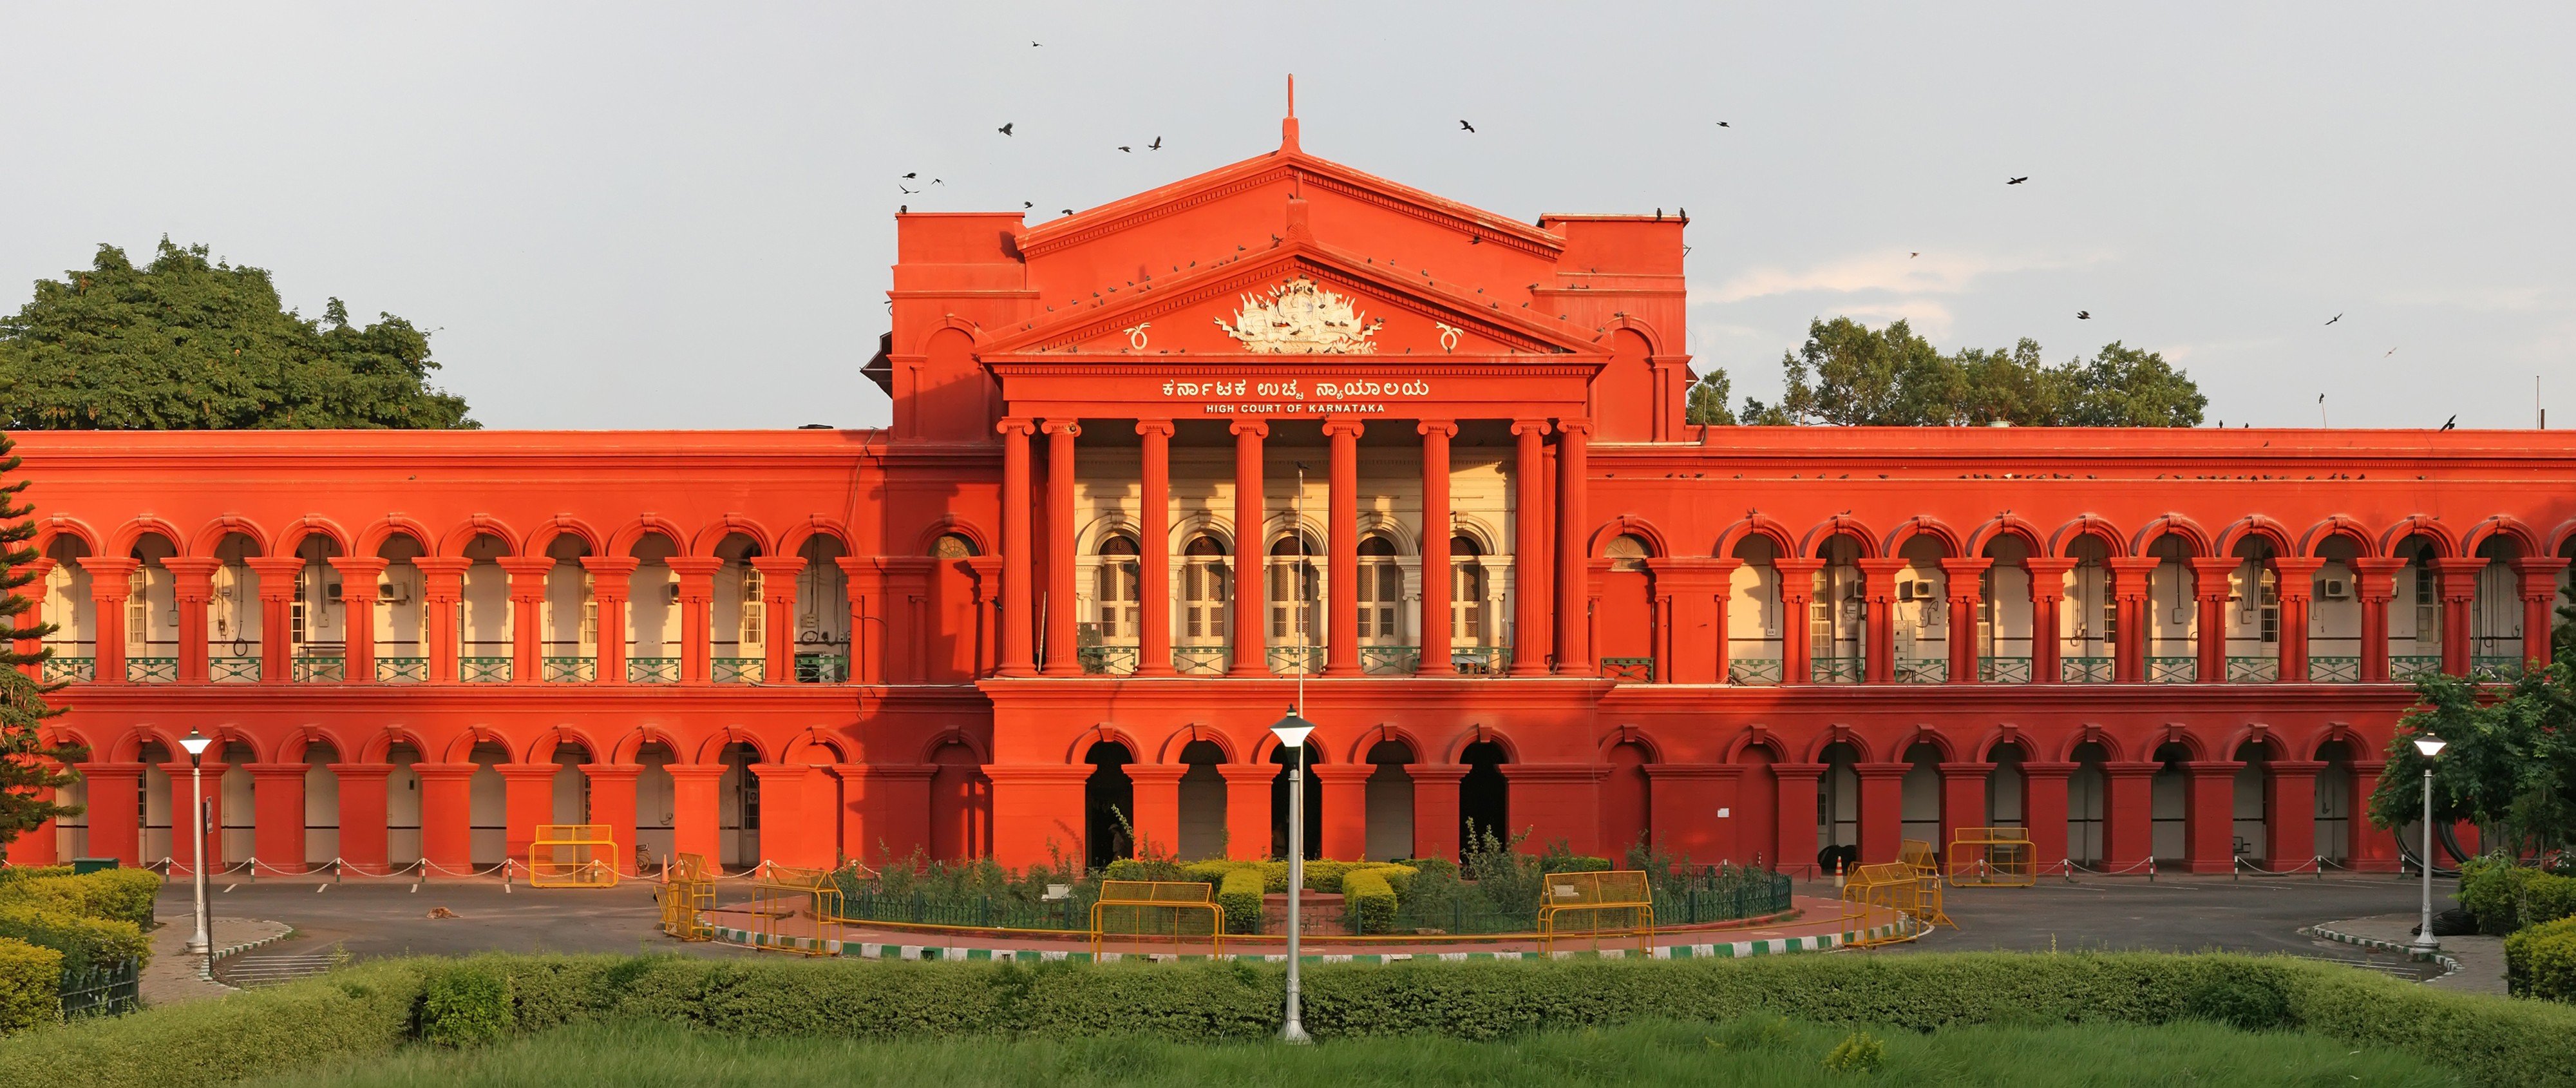 High Court Of Karnataka Bangalore India Red